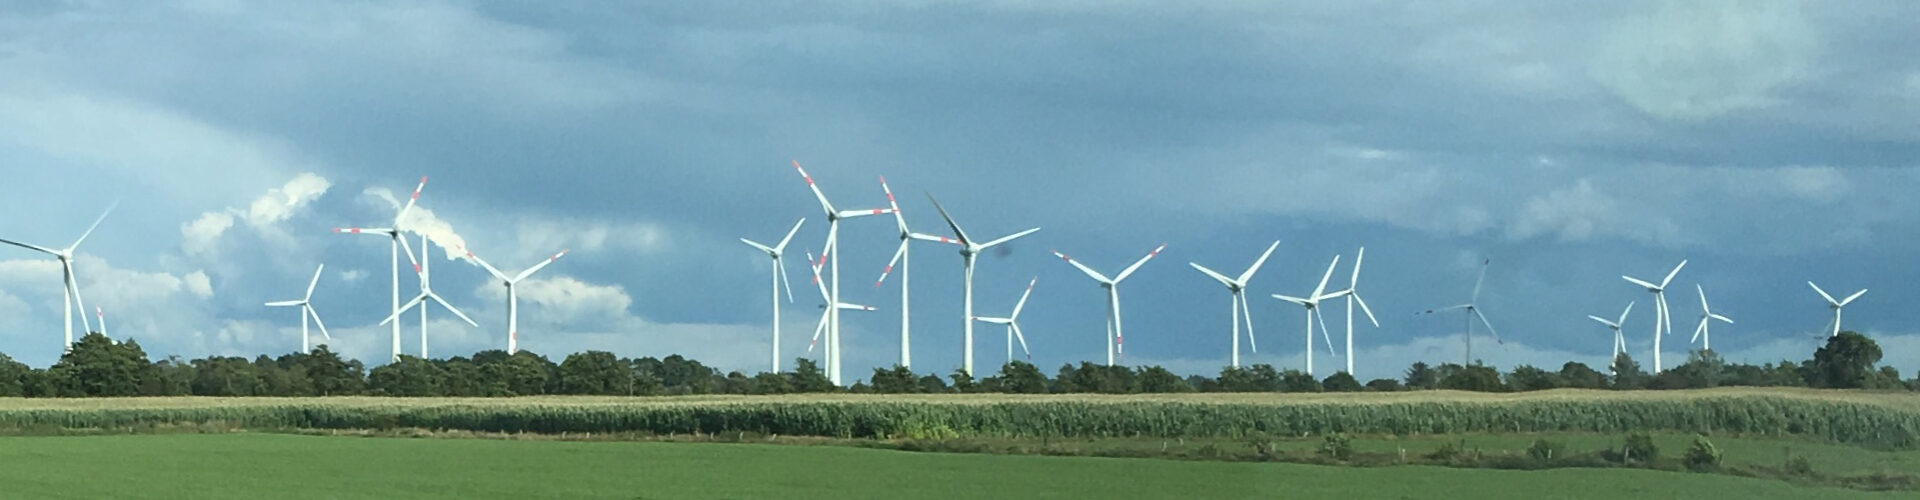 Himmel in Nordfriesland mit Windmühlen